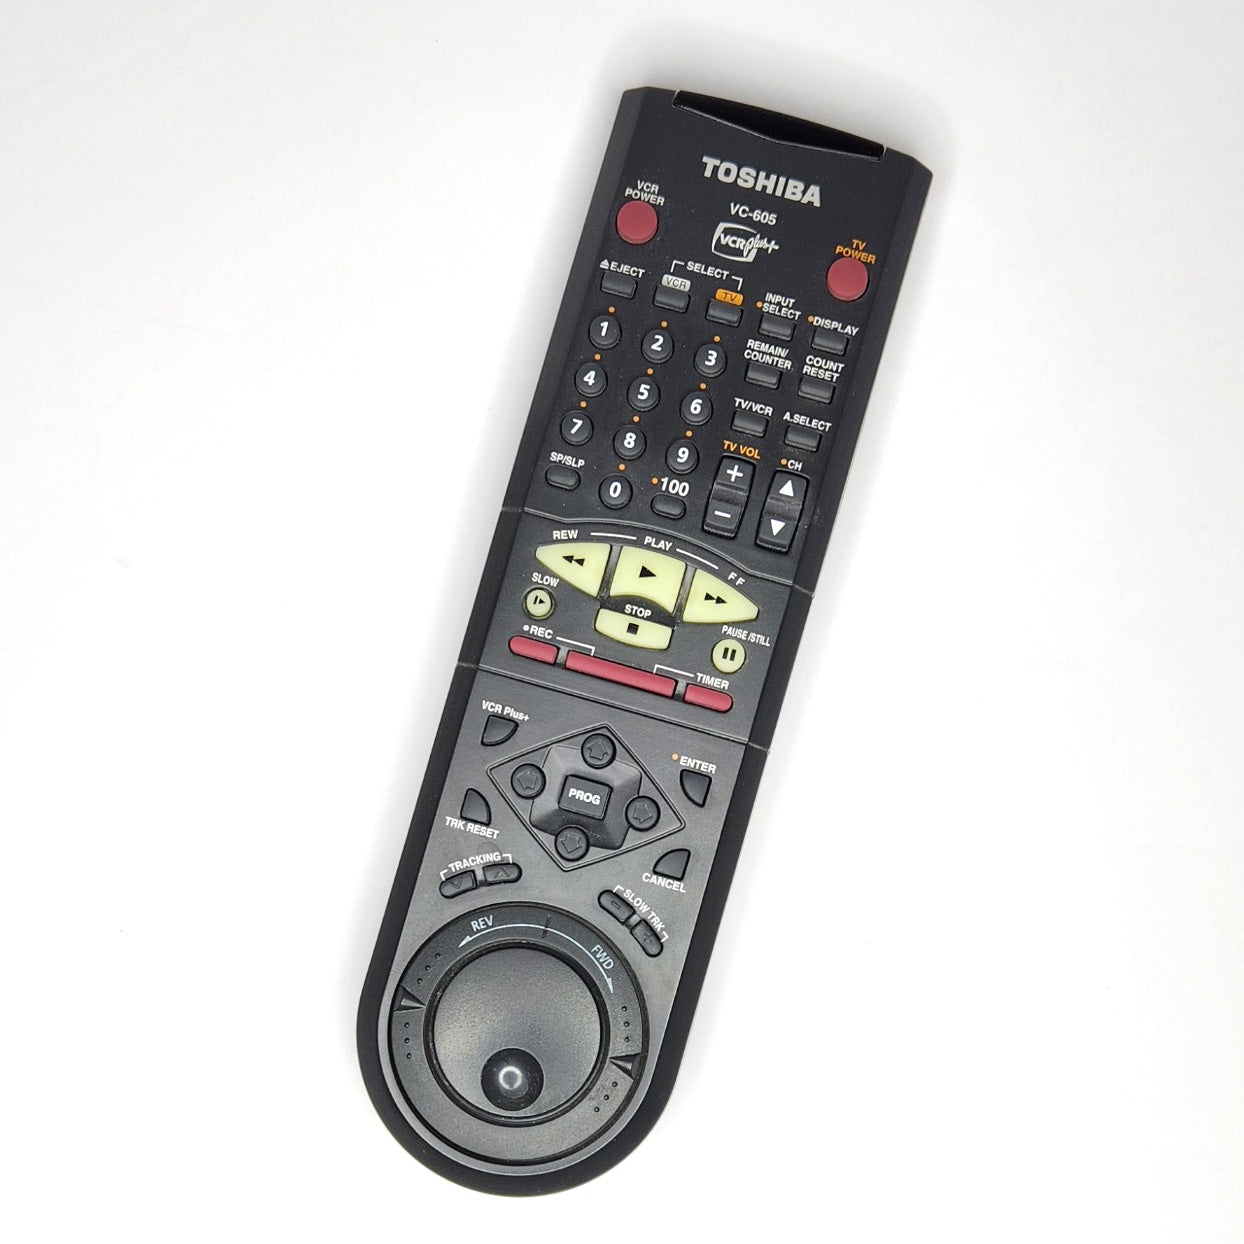 Toshiba W-605 VCR, 4-Head Hi-Fi Stereo - Remote Control